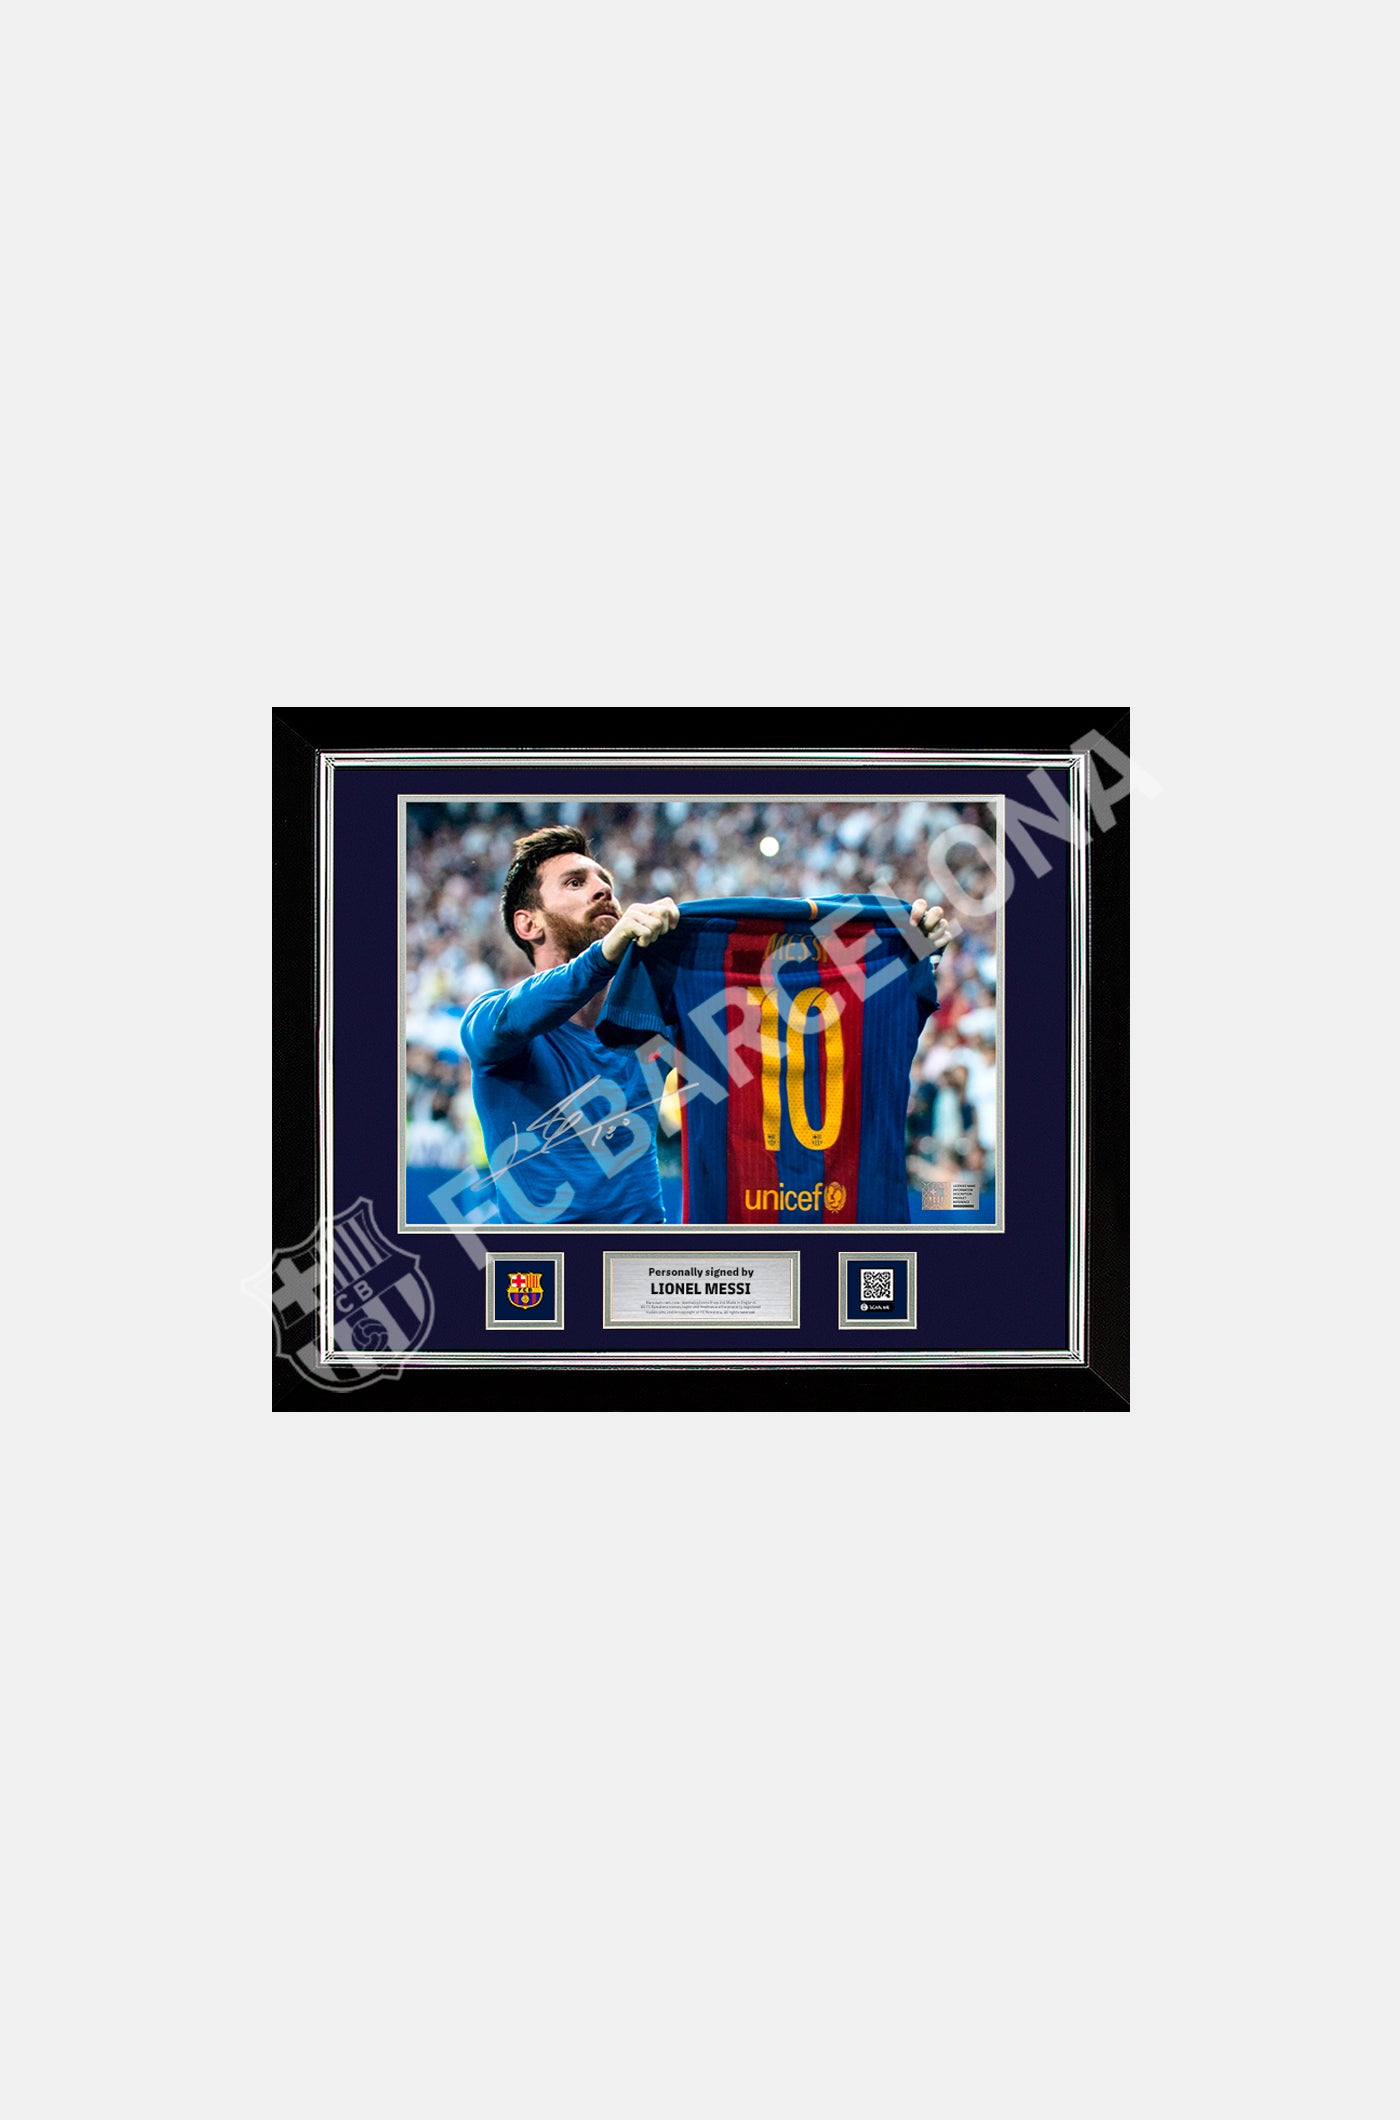 MESSI | Fotografía oficial del FC Barcelona de la icónica celebración del clásico firmada y enmarcada por Lionel Messi